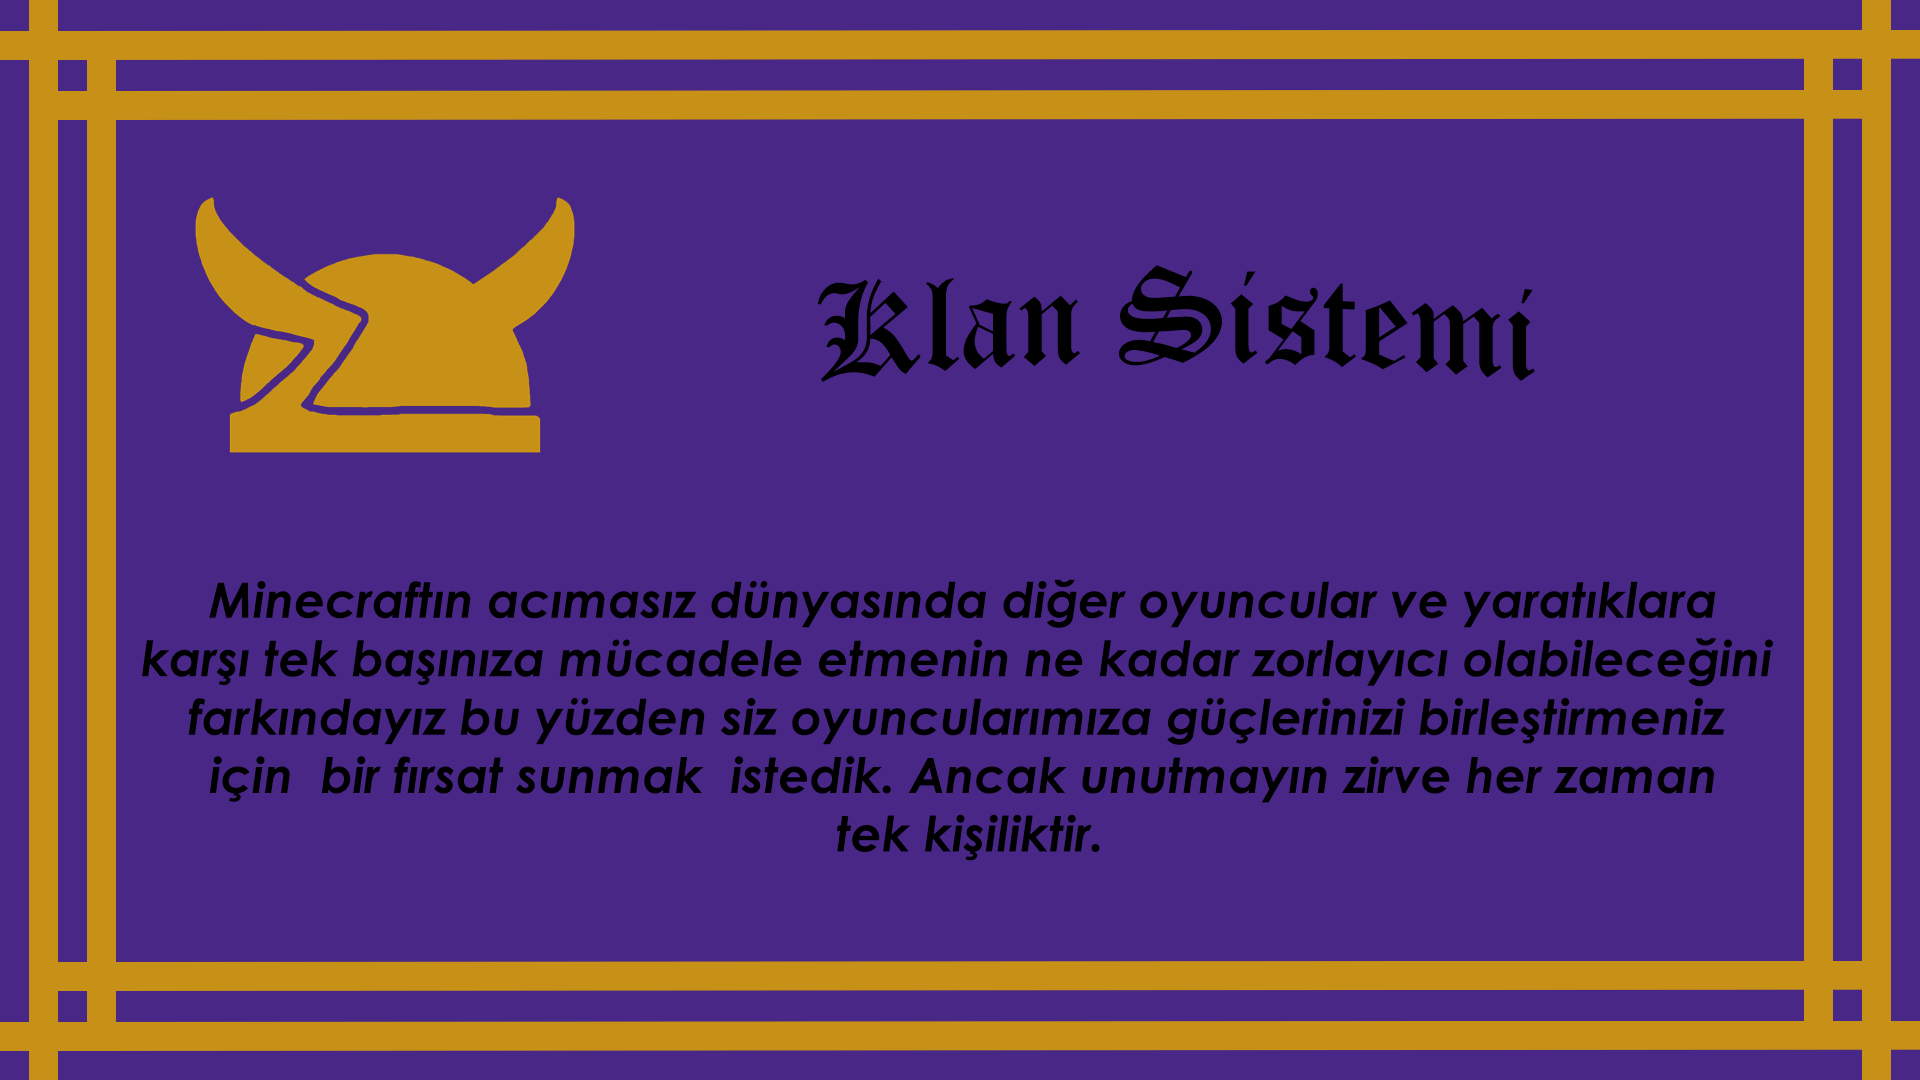 klan sistemi1.png